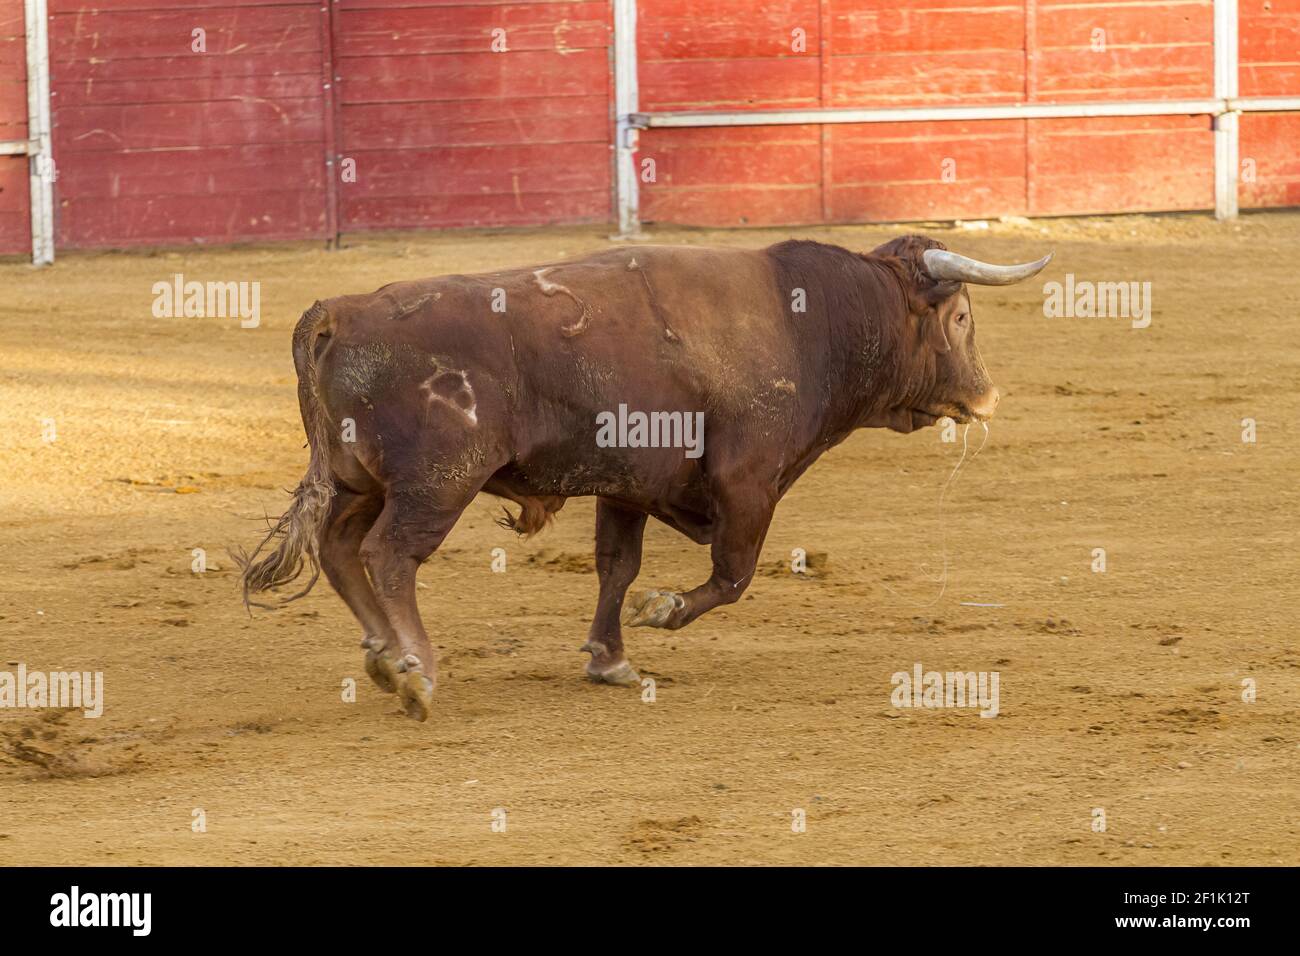 Stierkampf Unterhaltung Stierkampf, spanische tapfere Stier in einer Stierkampfarena. Das Tier ist braun und hat sehr scharfe Hörner Stockfoto